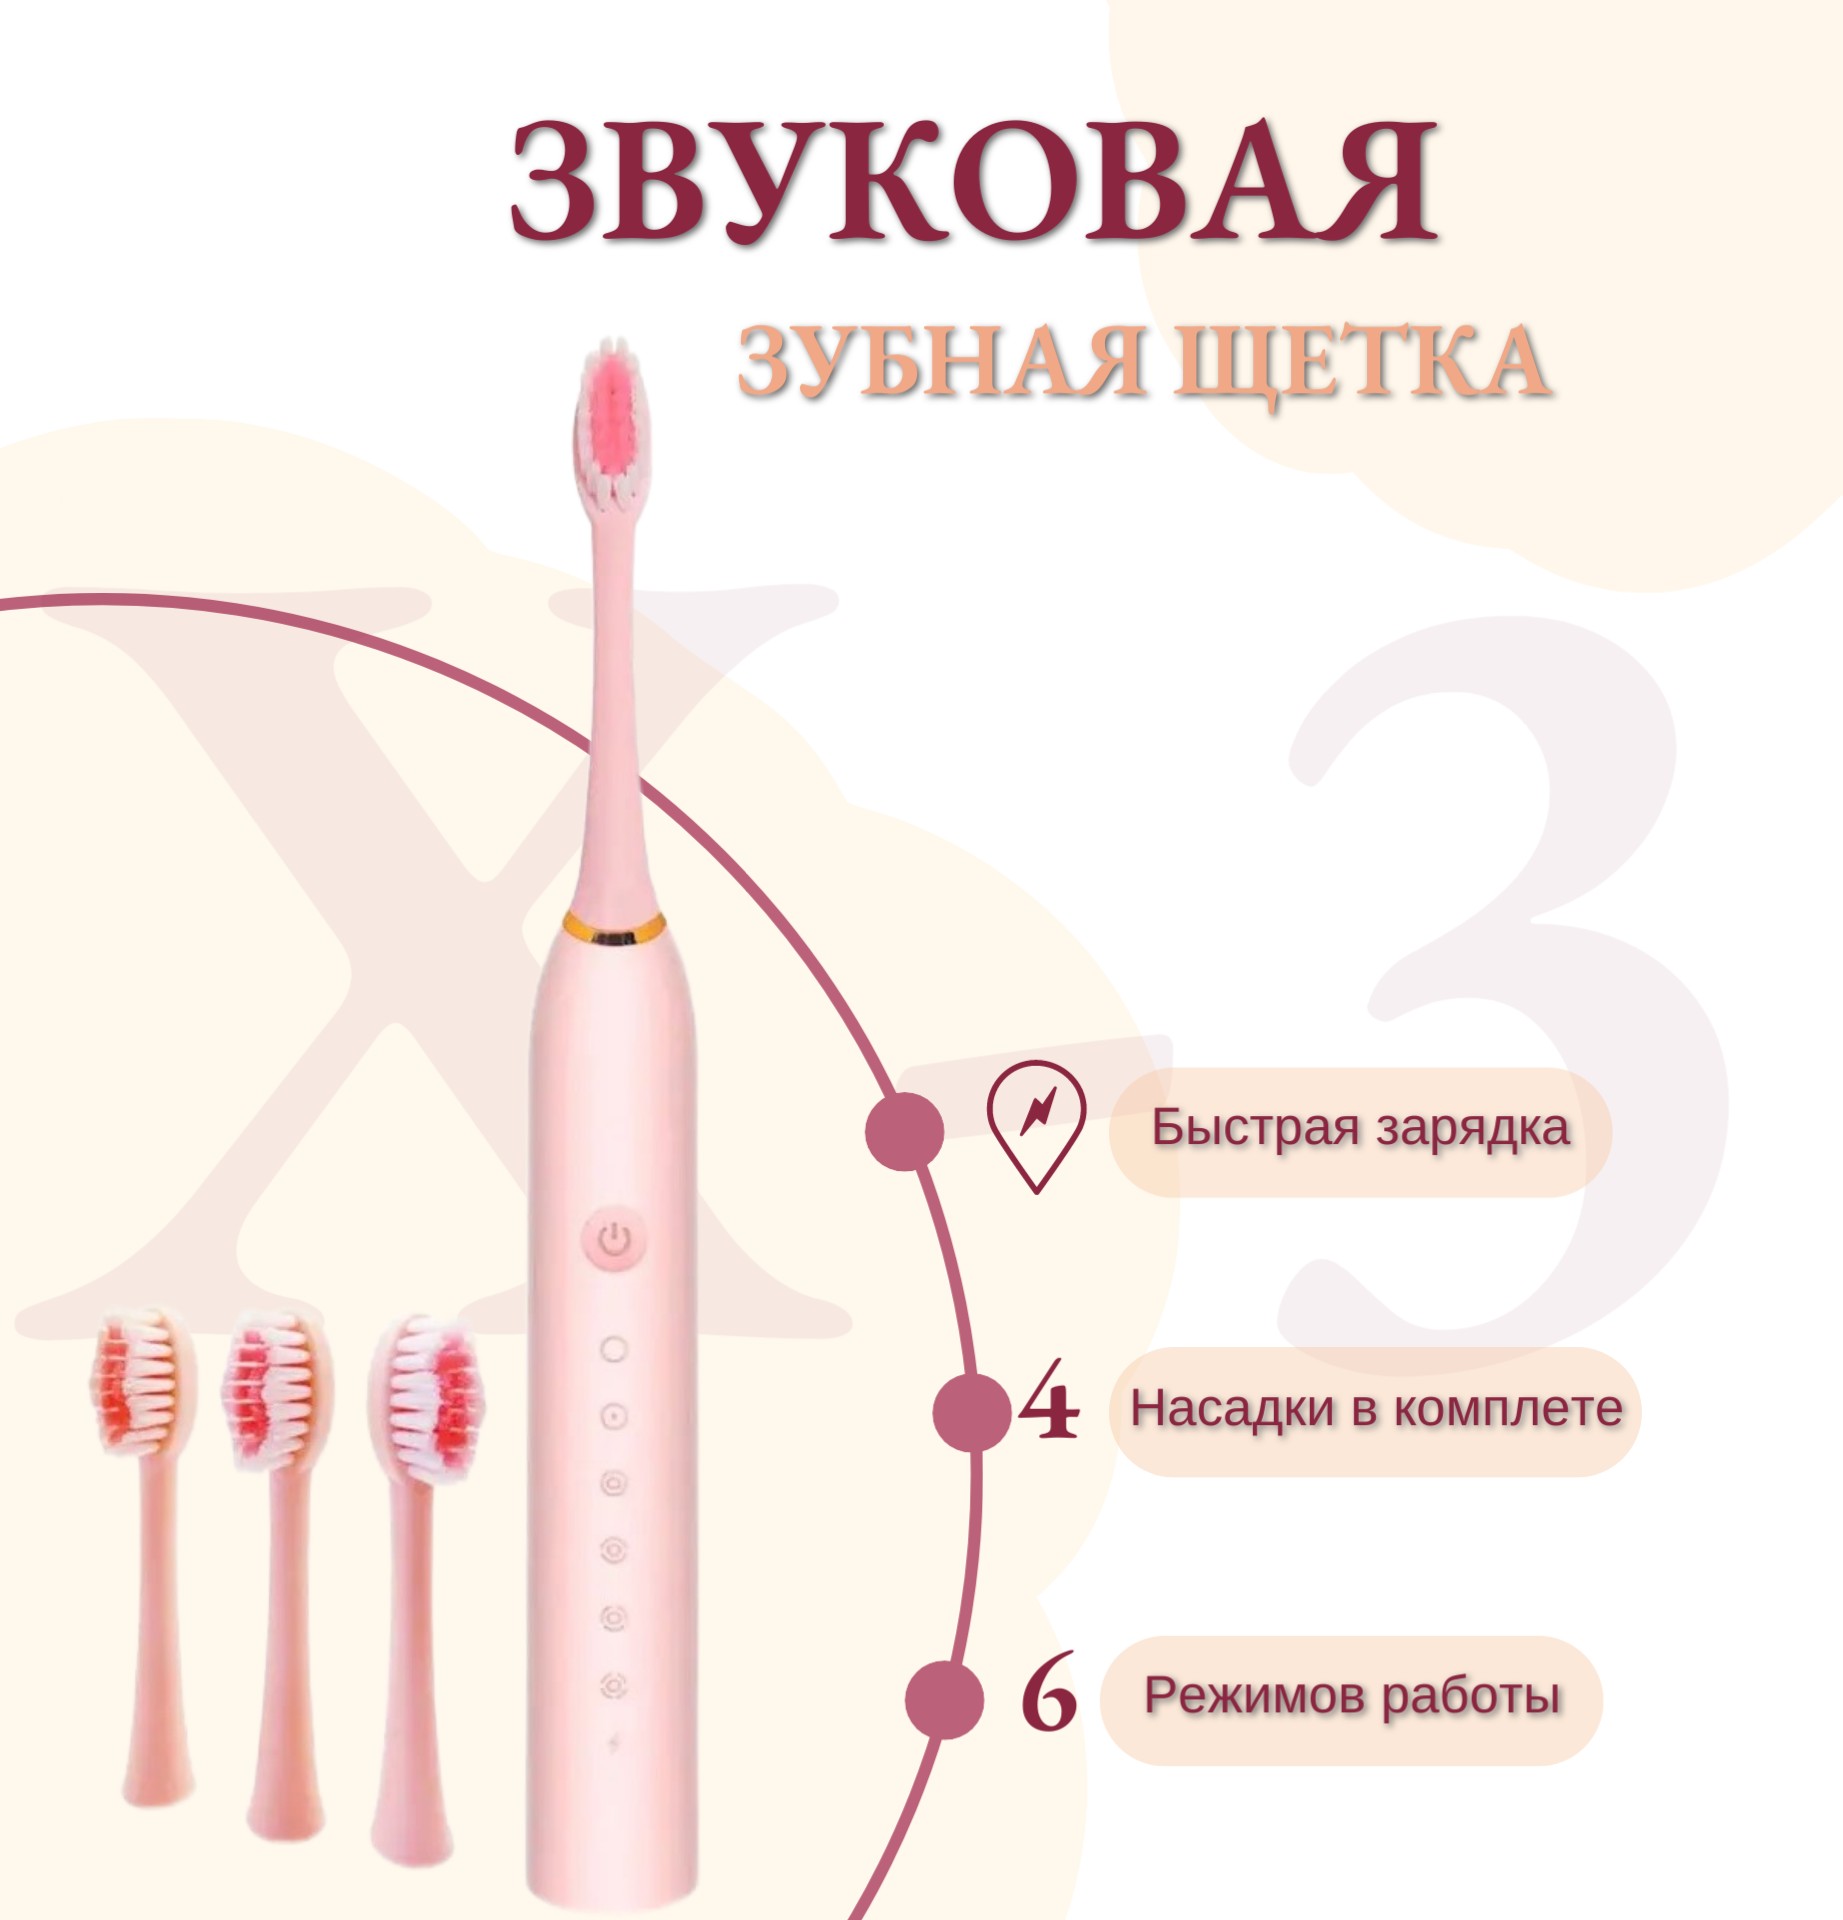 Электрическая зубная щетка Торговая федерация X-3 розовый фен щетка polaris phs 1204i 1200 вт 4 насадки 3 режима меренго розовый 008784